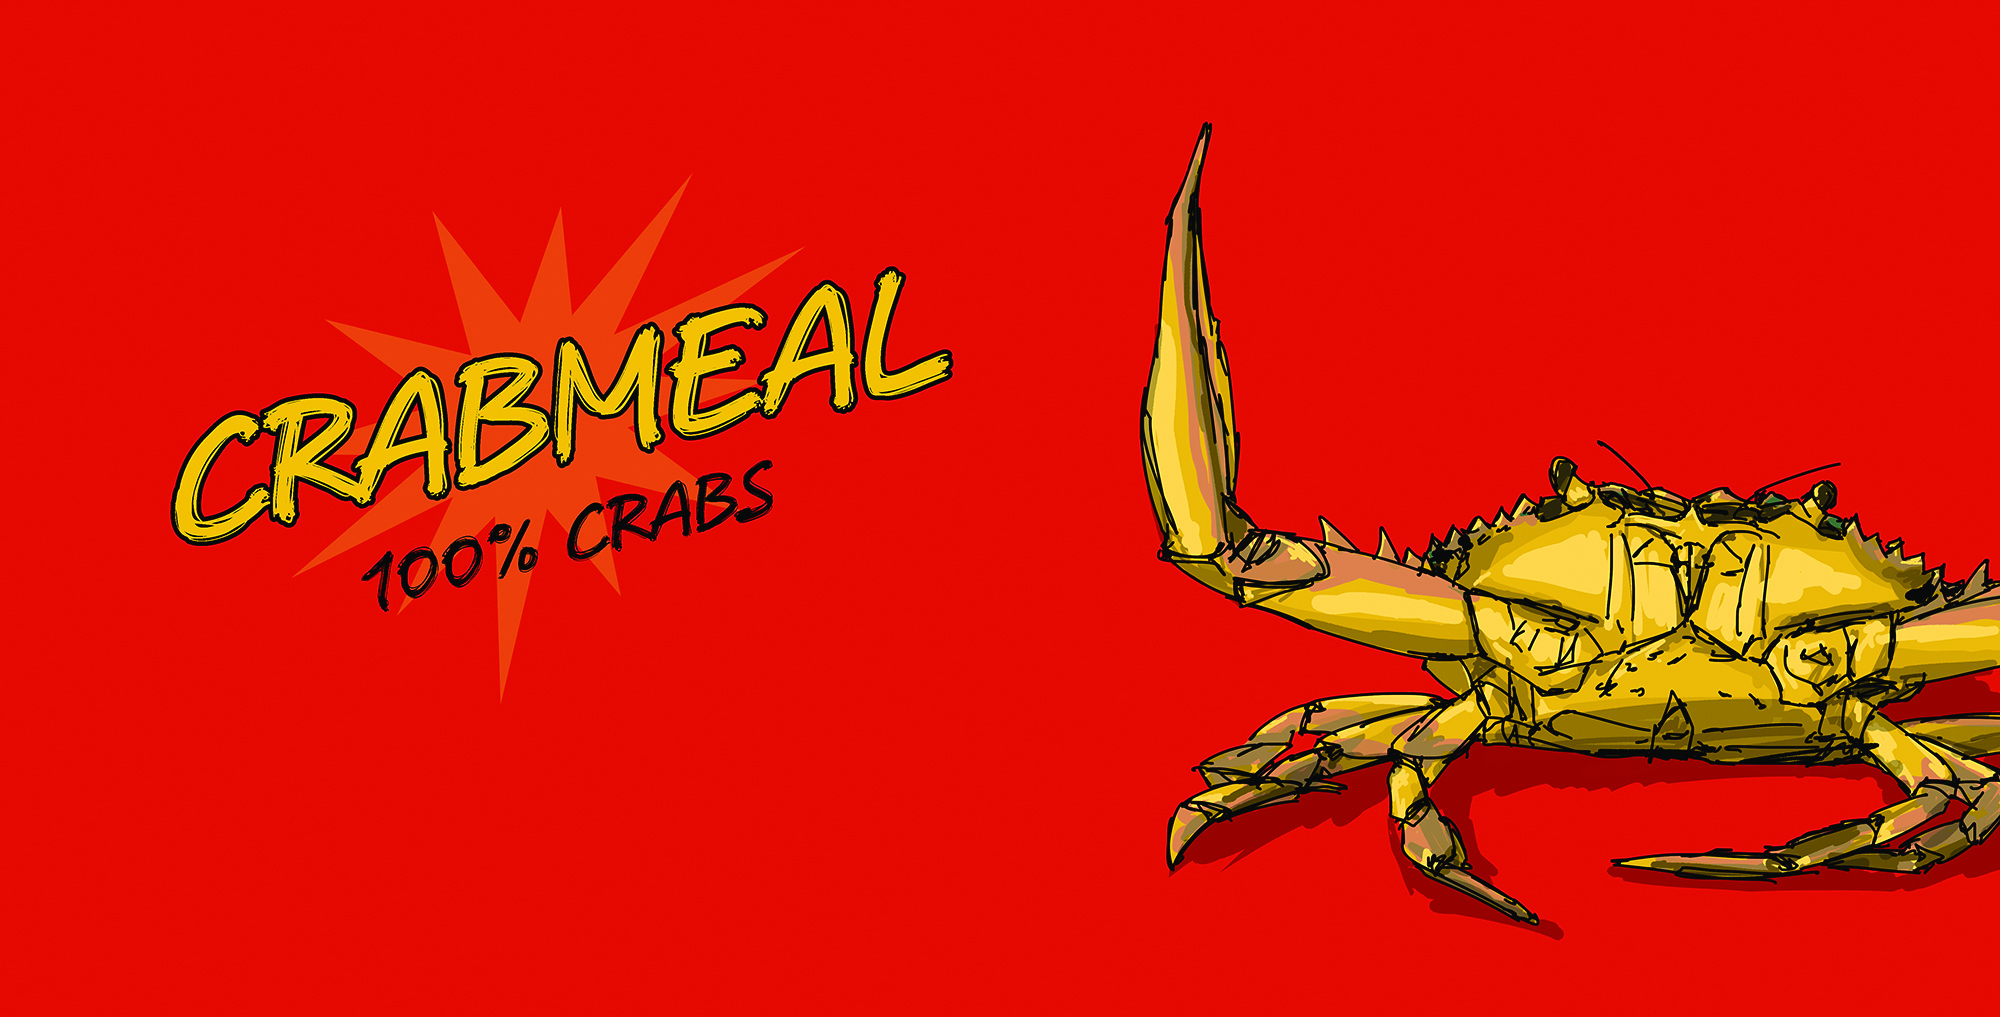 Crabmeal